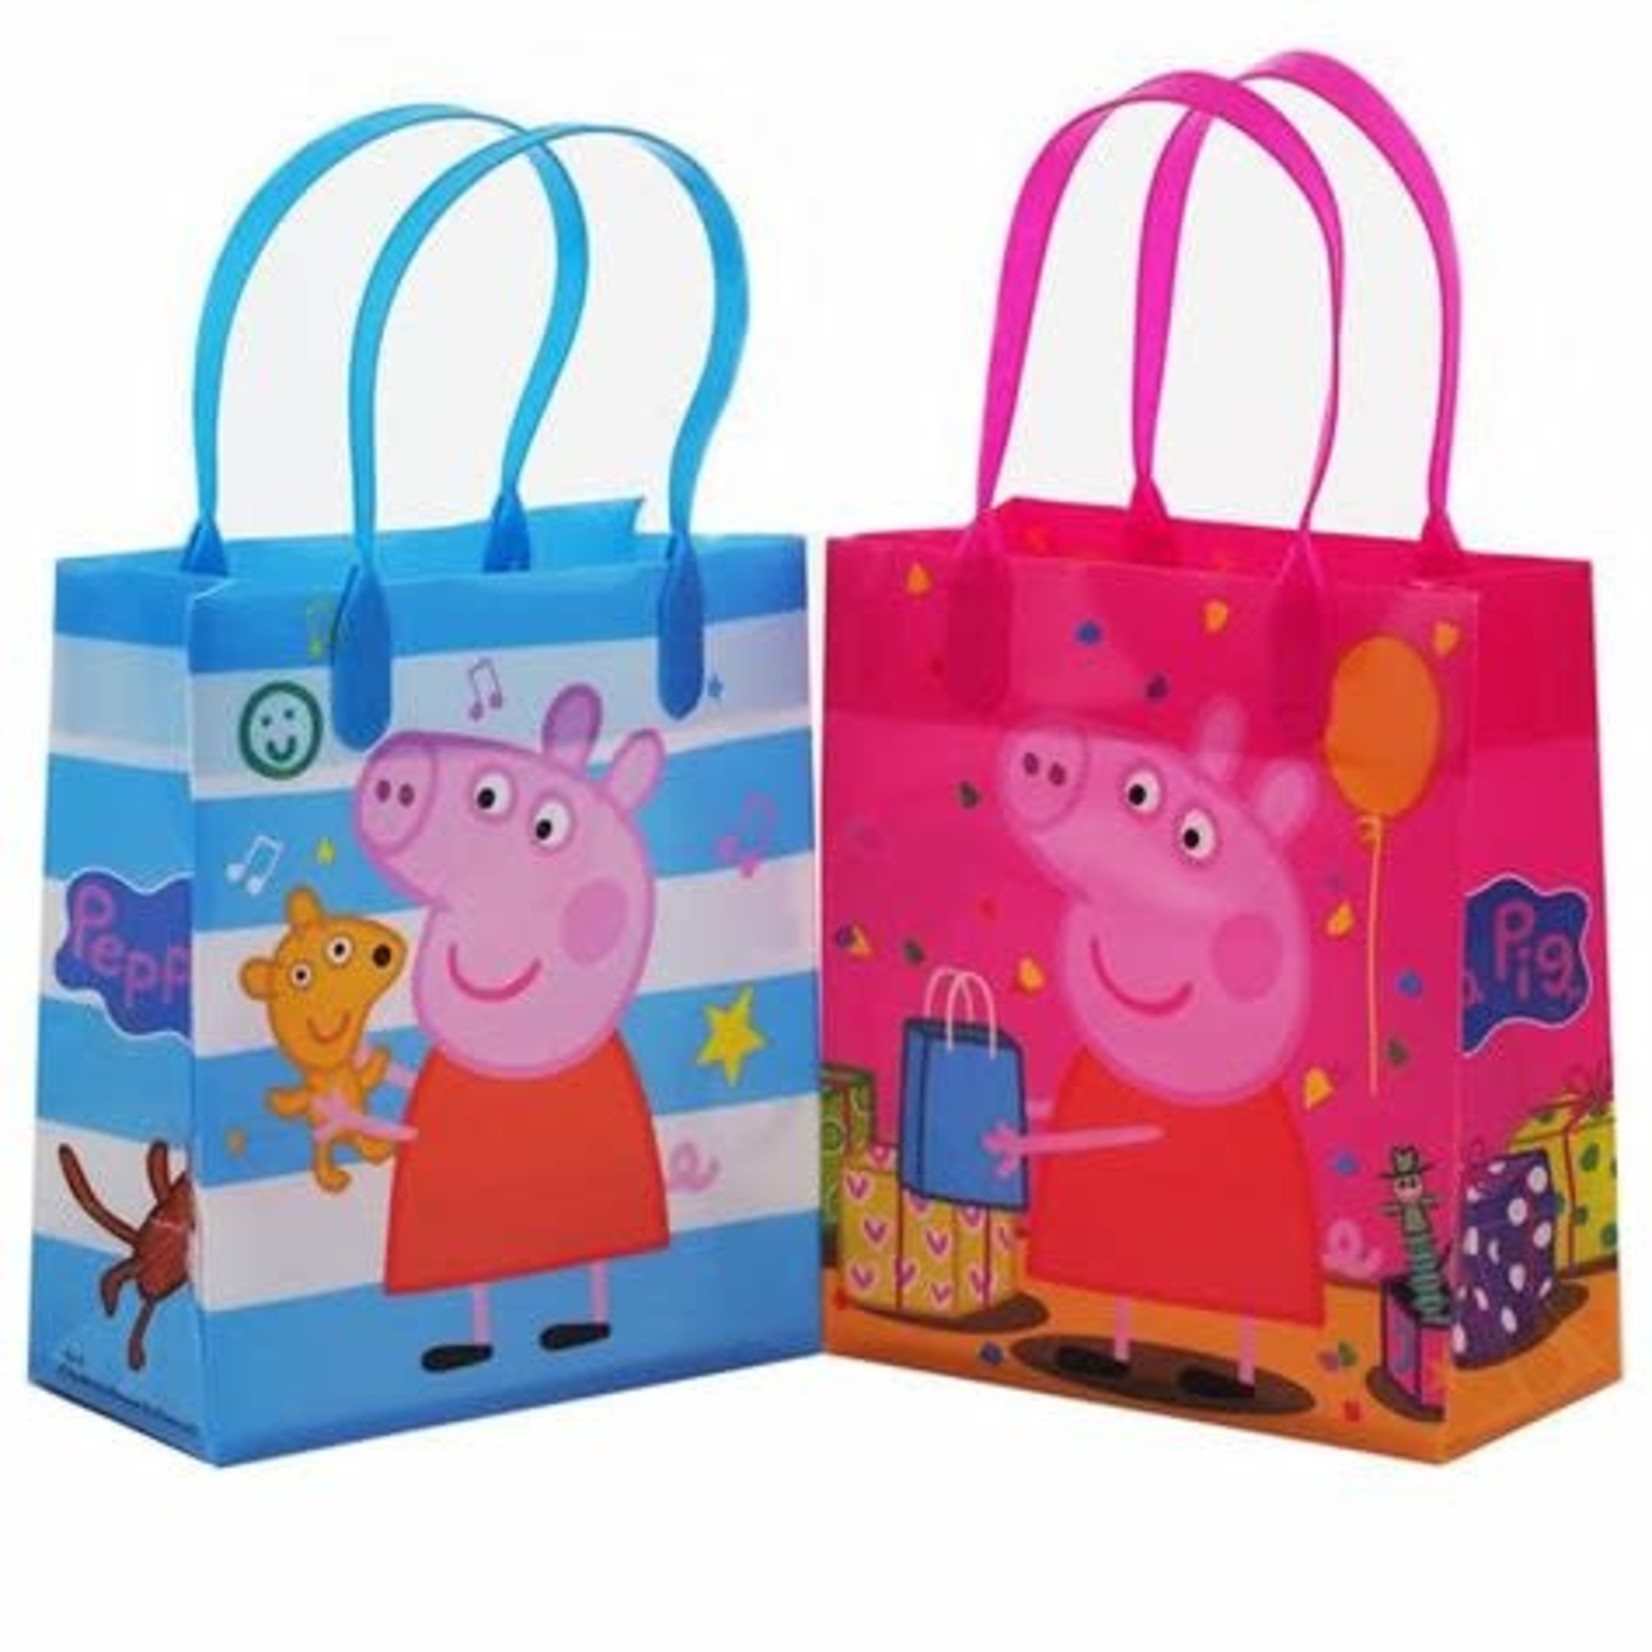 Peppa Pig Plastic Favor Bags 12ct